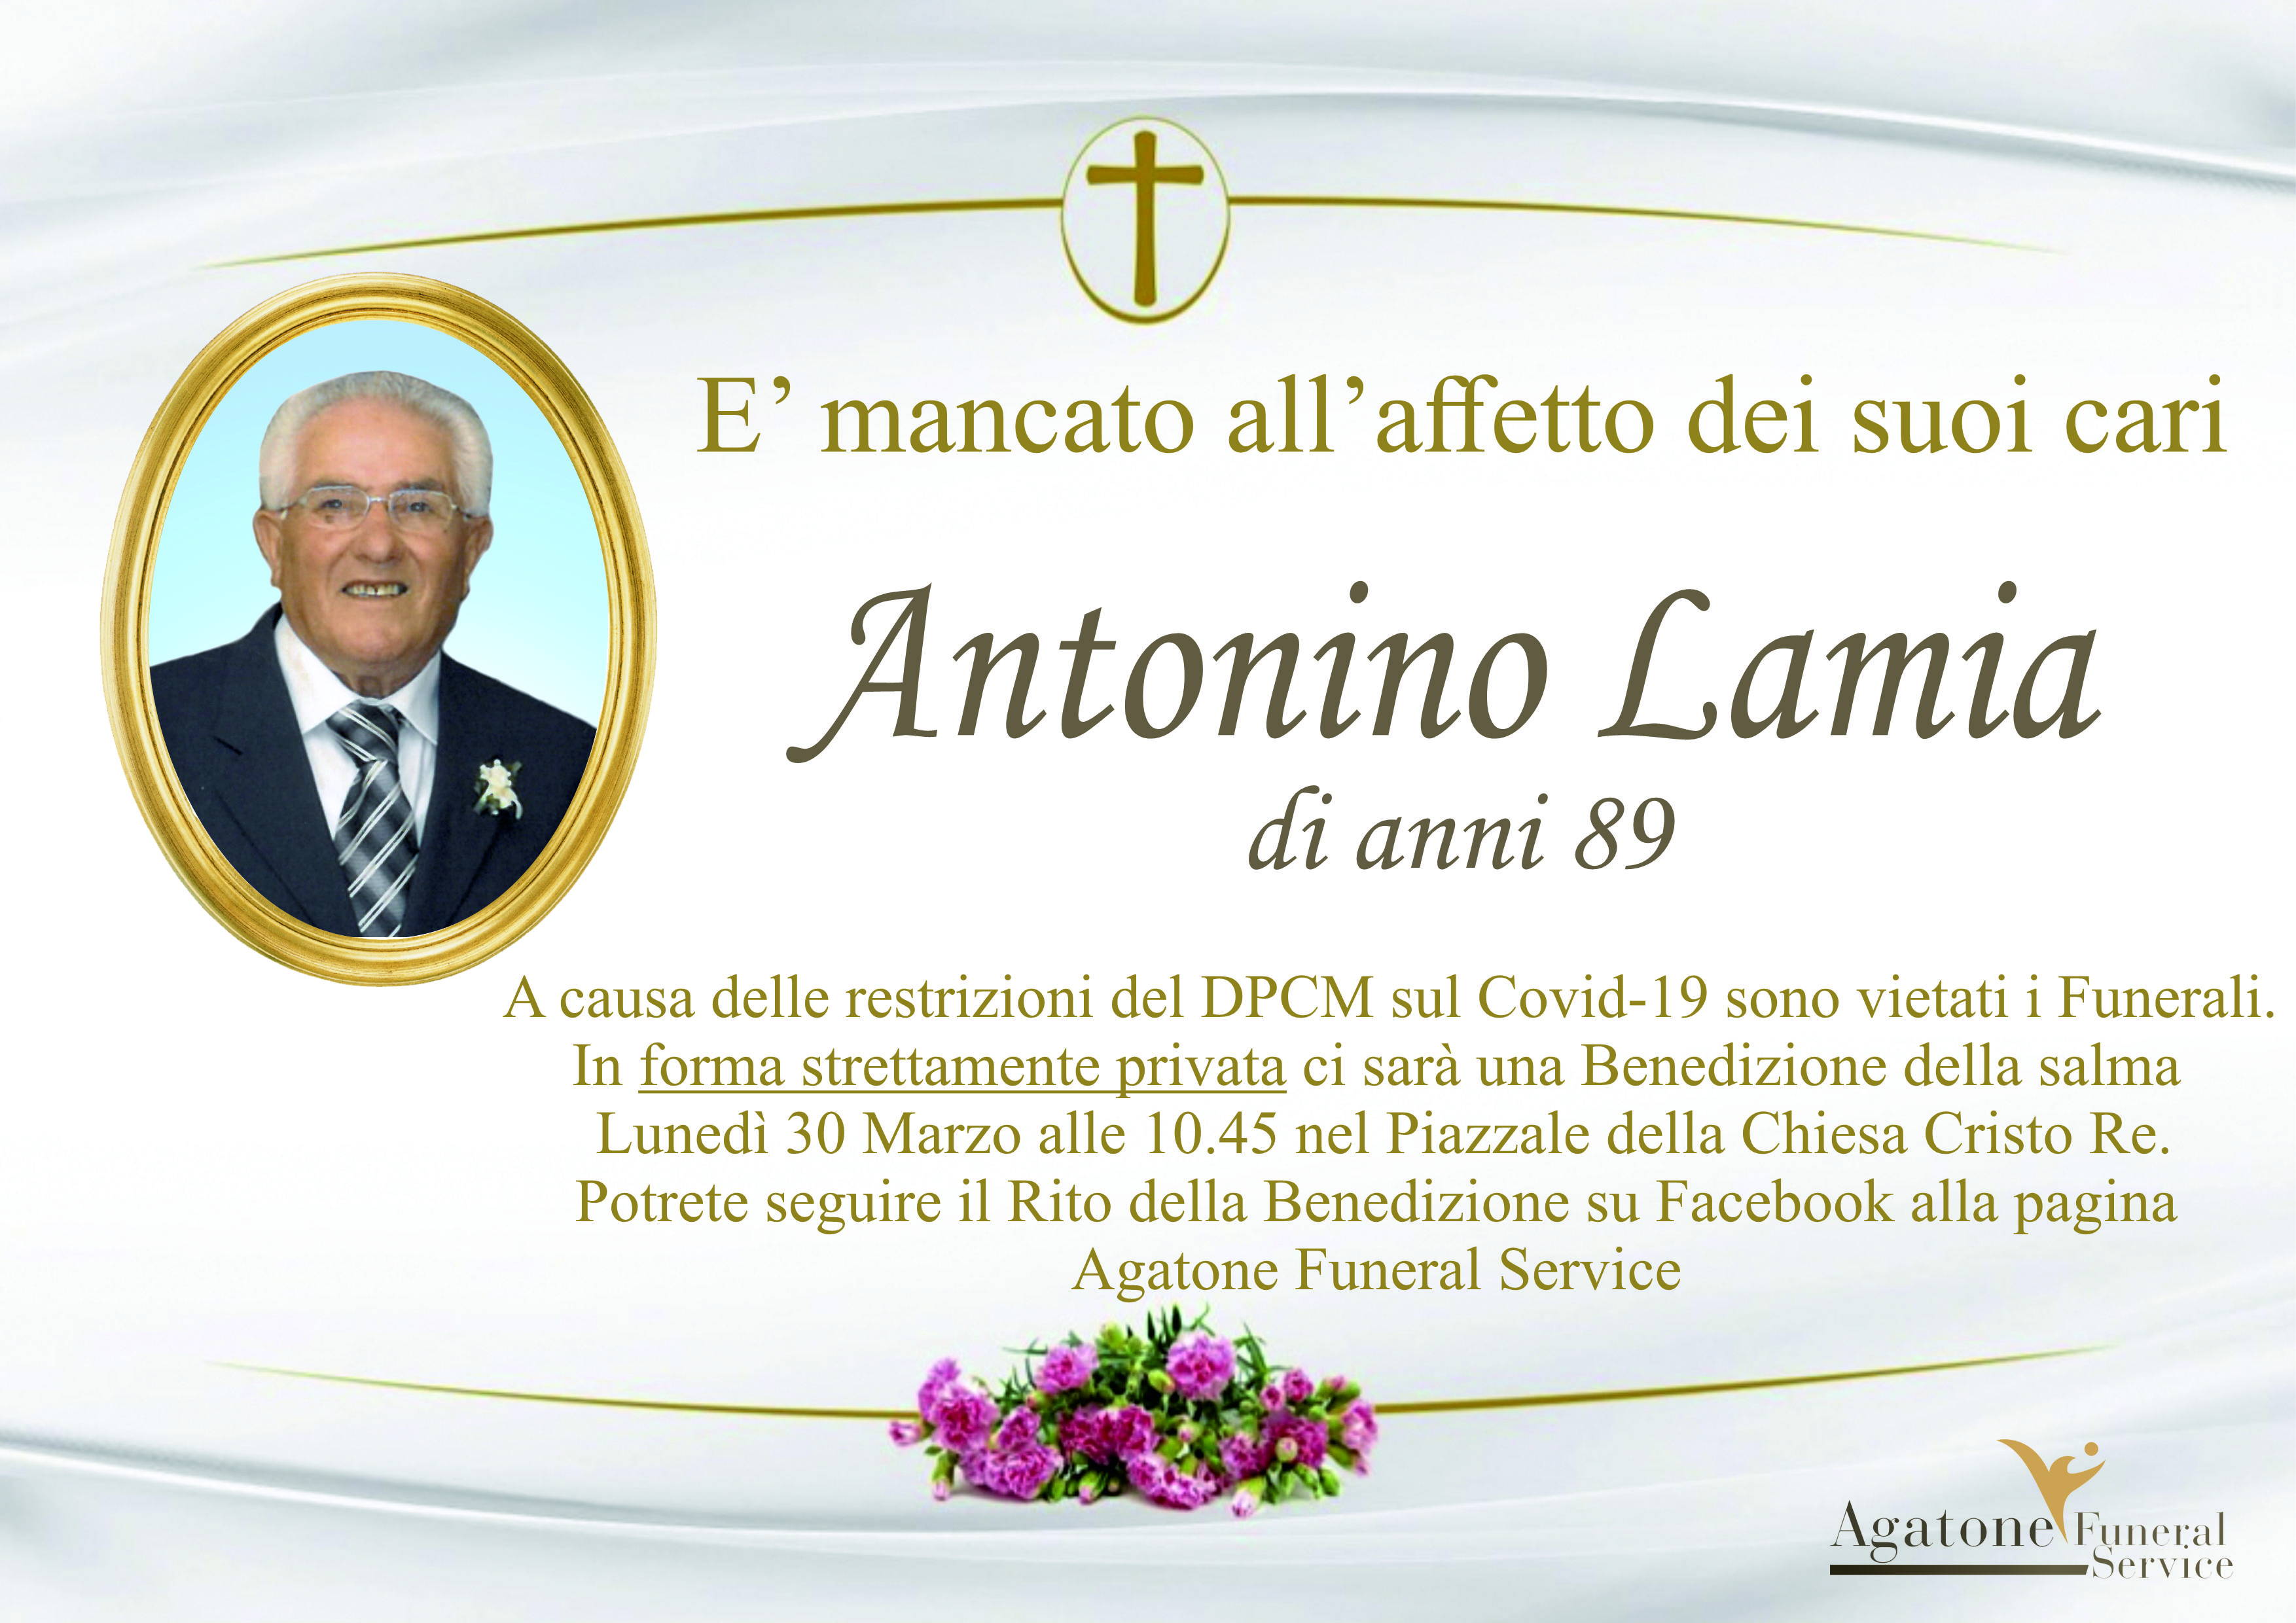 Antonino Lamia